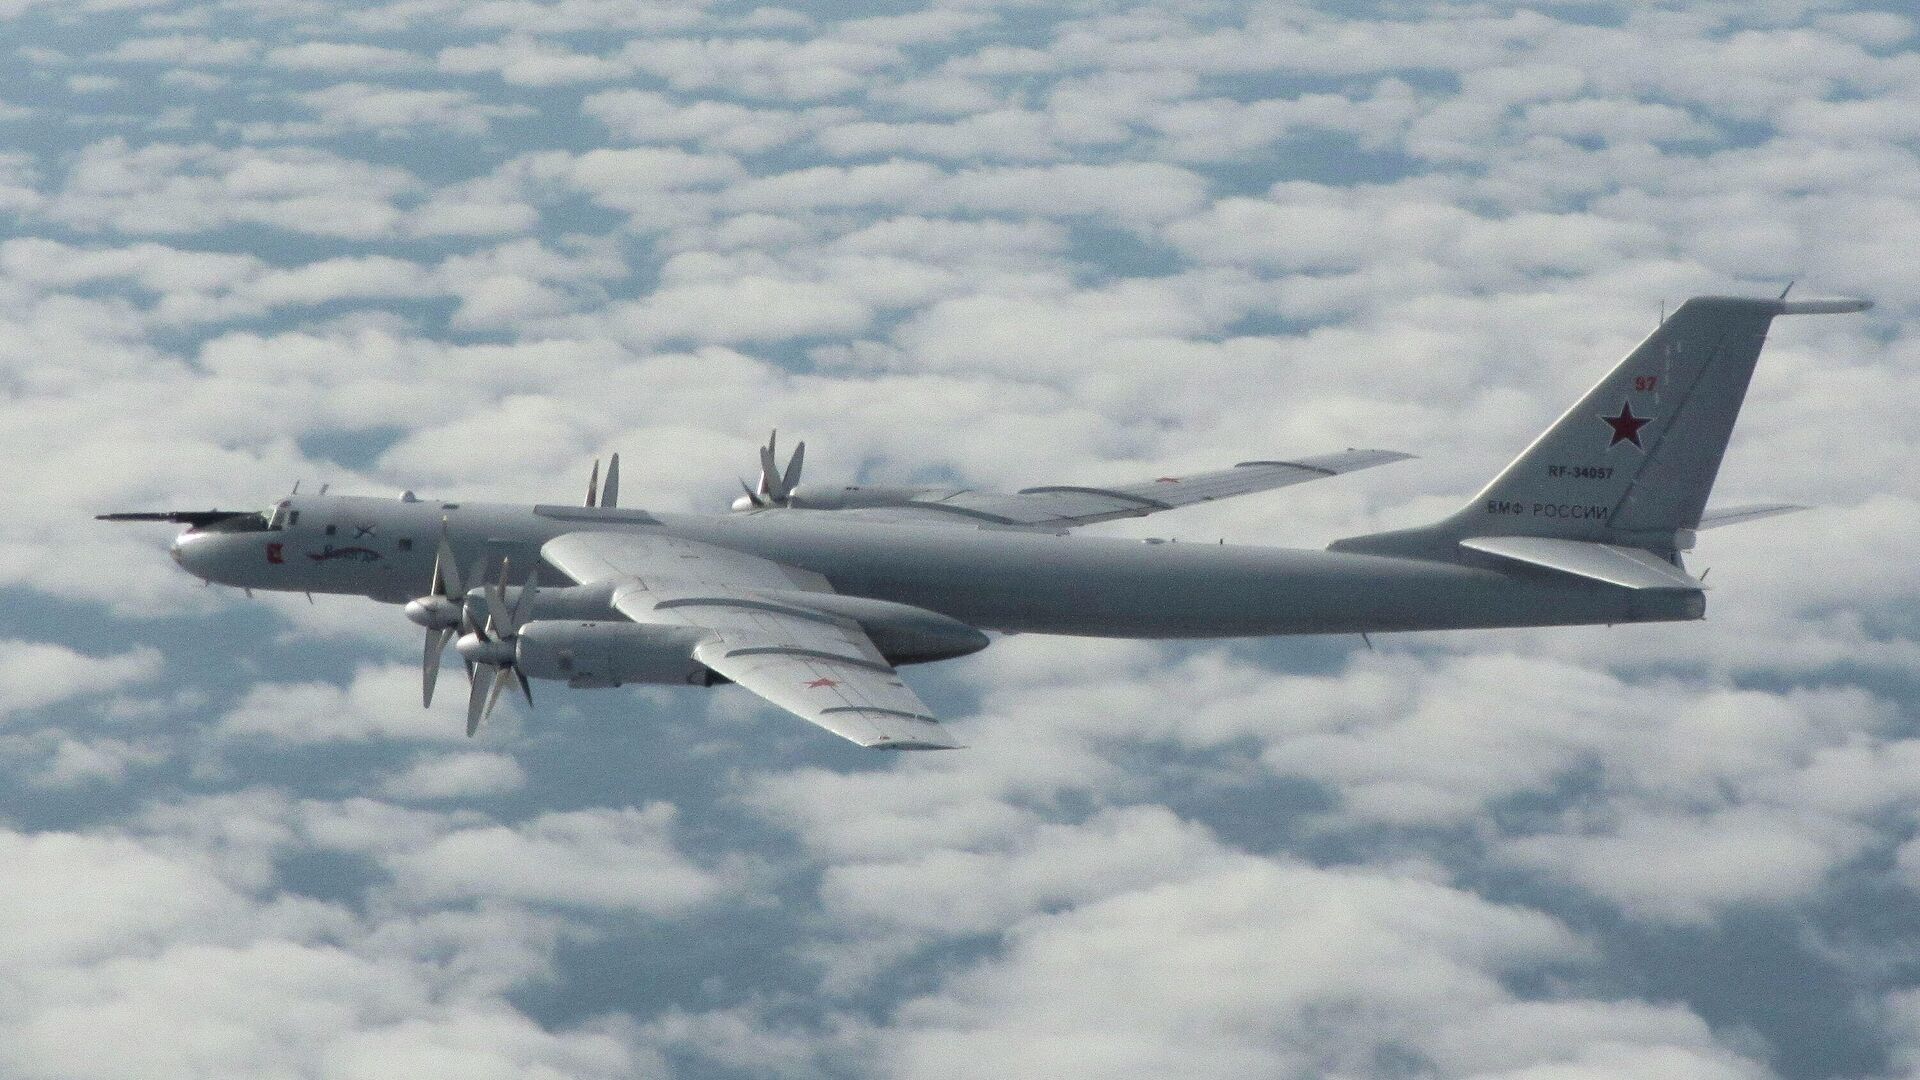 Истребители британских ВВС сопровождали российские военные самолеты Ту-142 в небе над Северным морем - РИА Новости, 1920, 21.11.2020